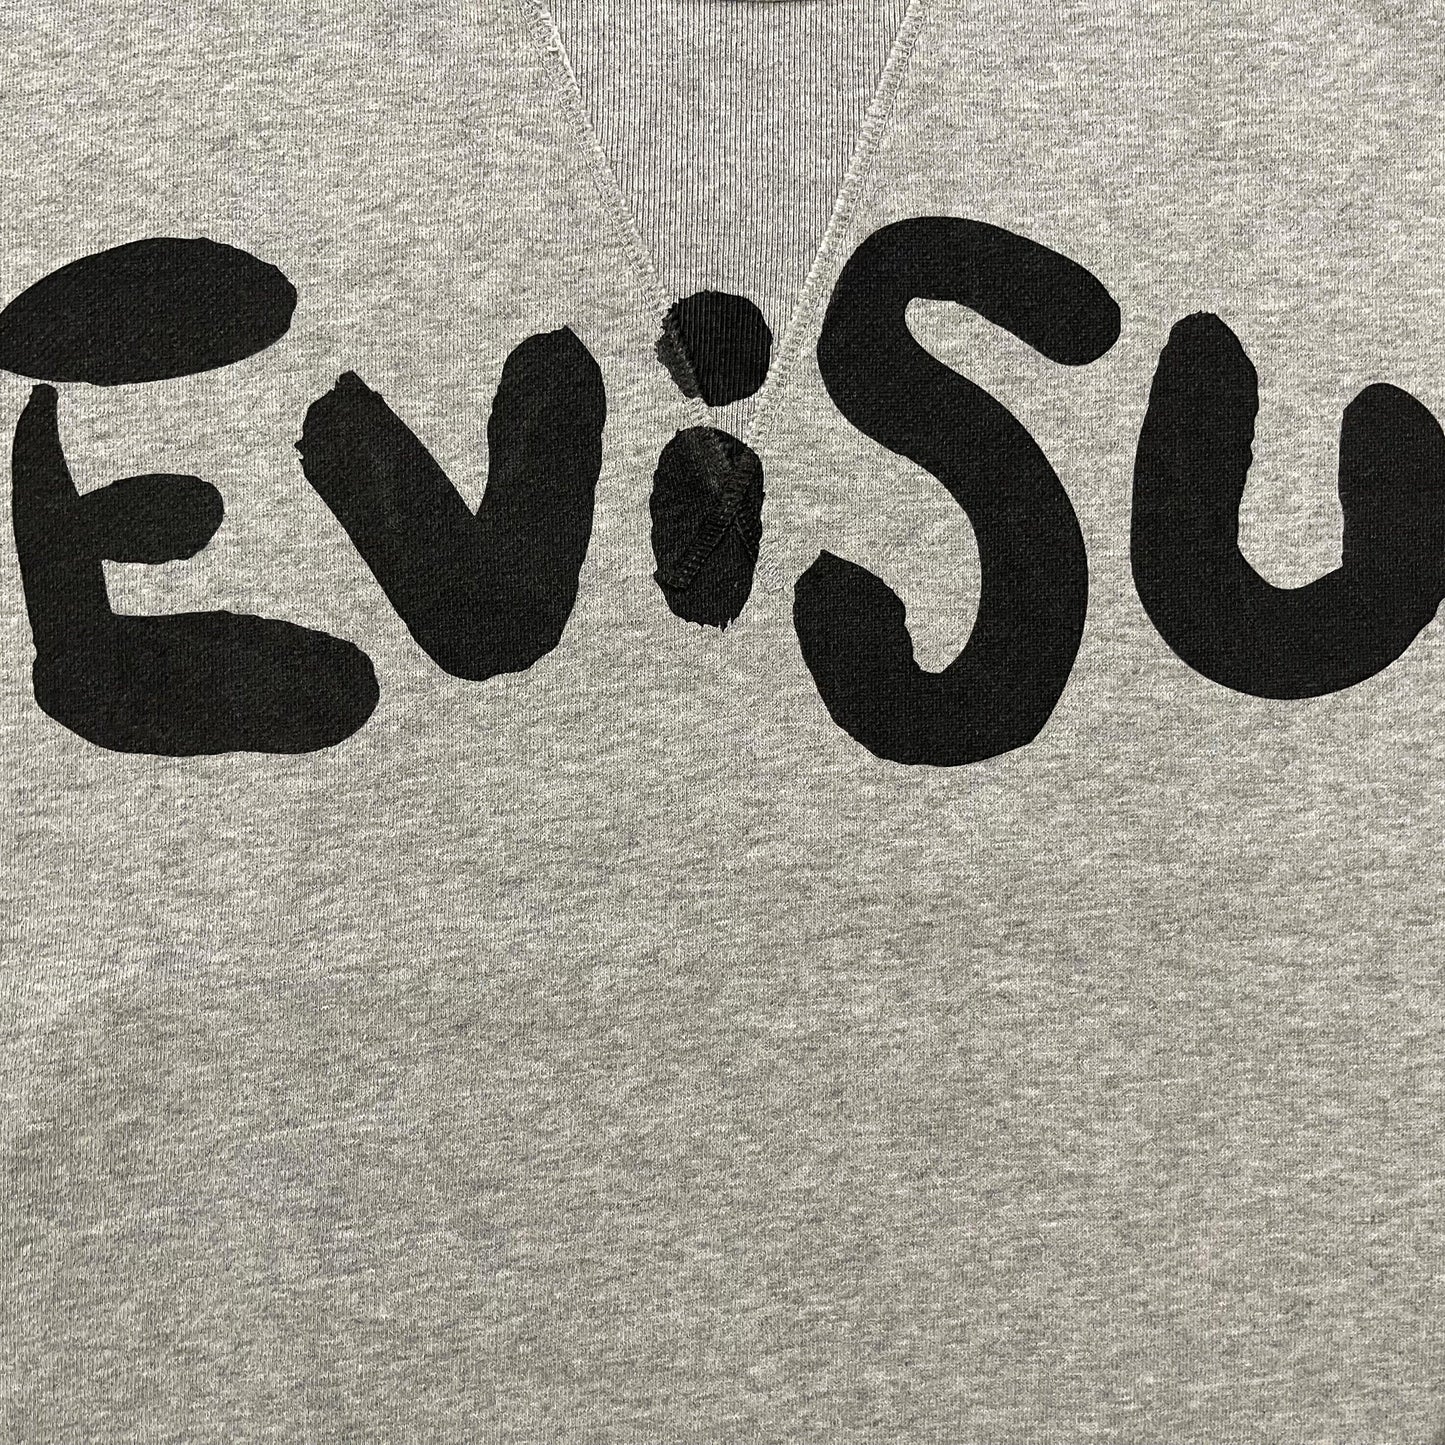 Evisu Sweatshirt - Known Source